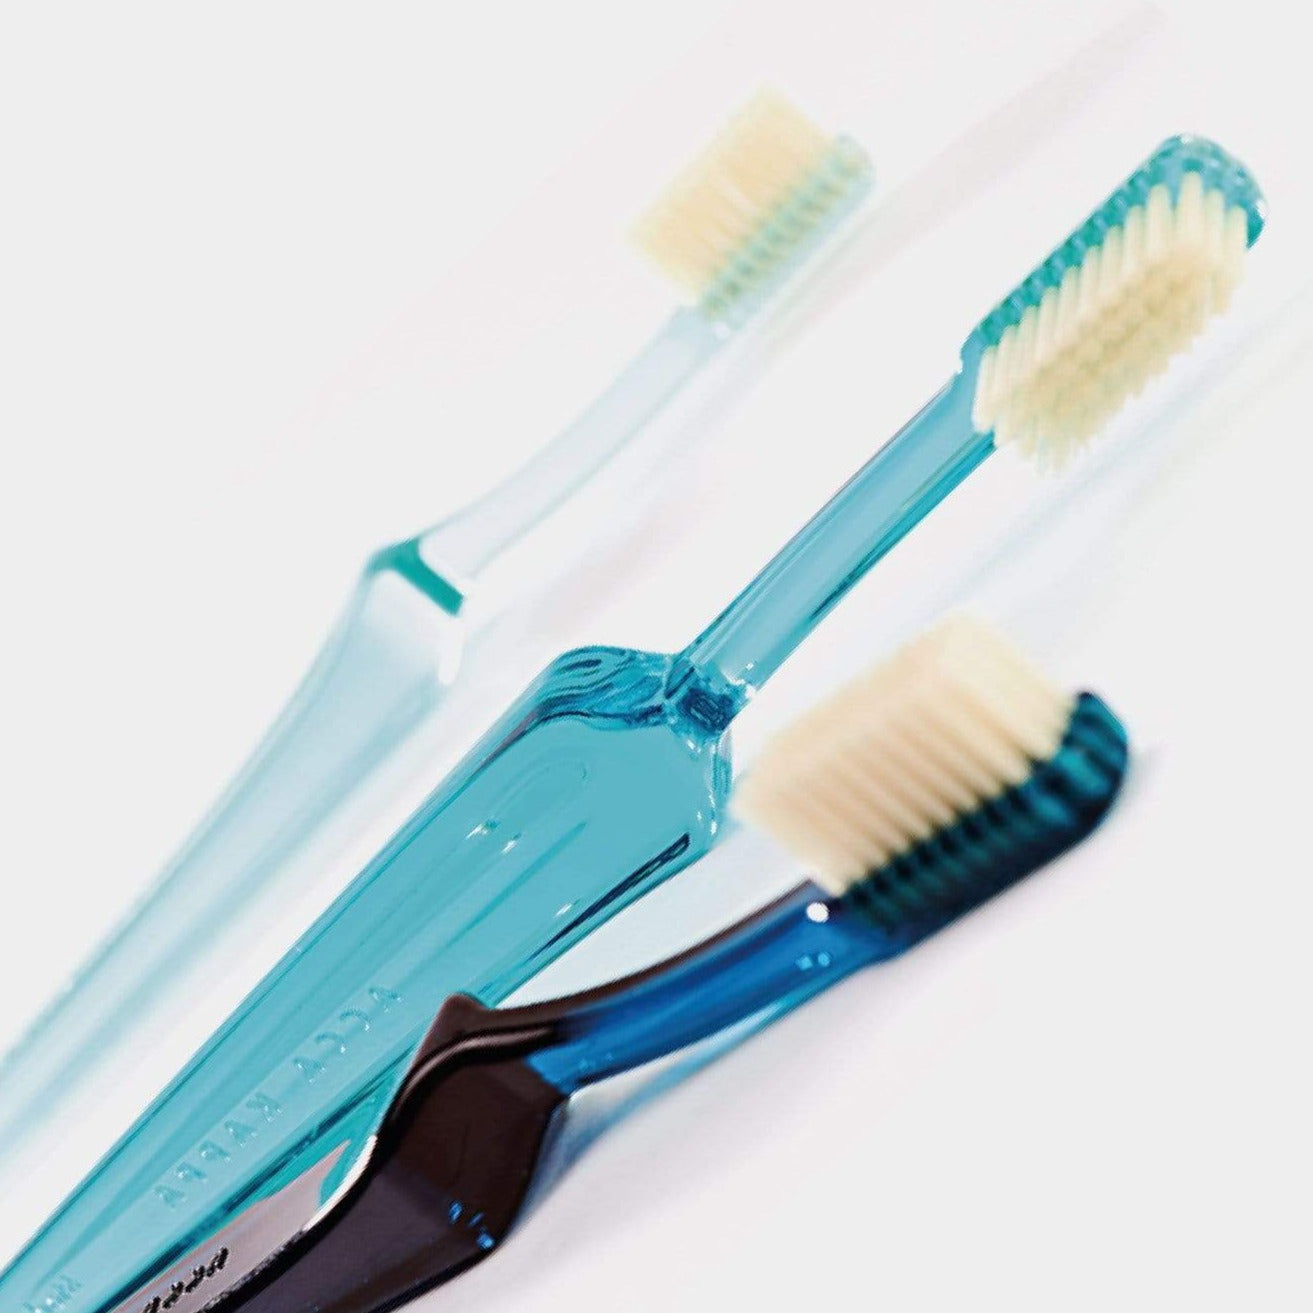 Acca Kappa Lympio Toothbrush - Ocean Blue